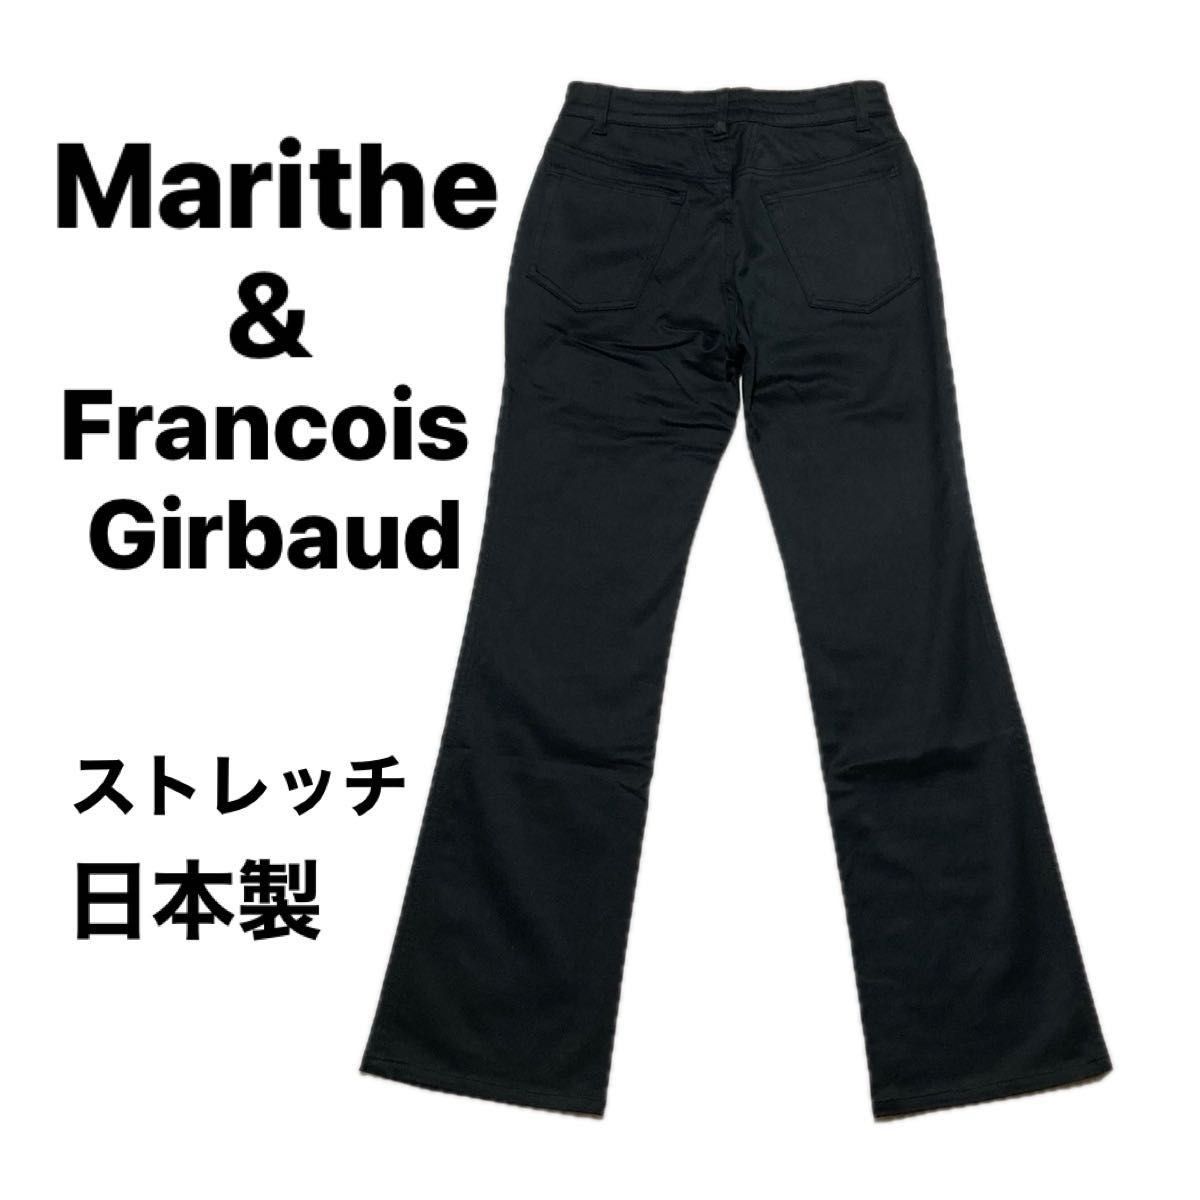 【 美品 】【 レア 】90’s 日本製 マリテ フランソワジルボー MARITHE & FRANCOIS GIRBAUD パンツ